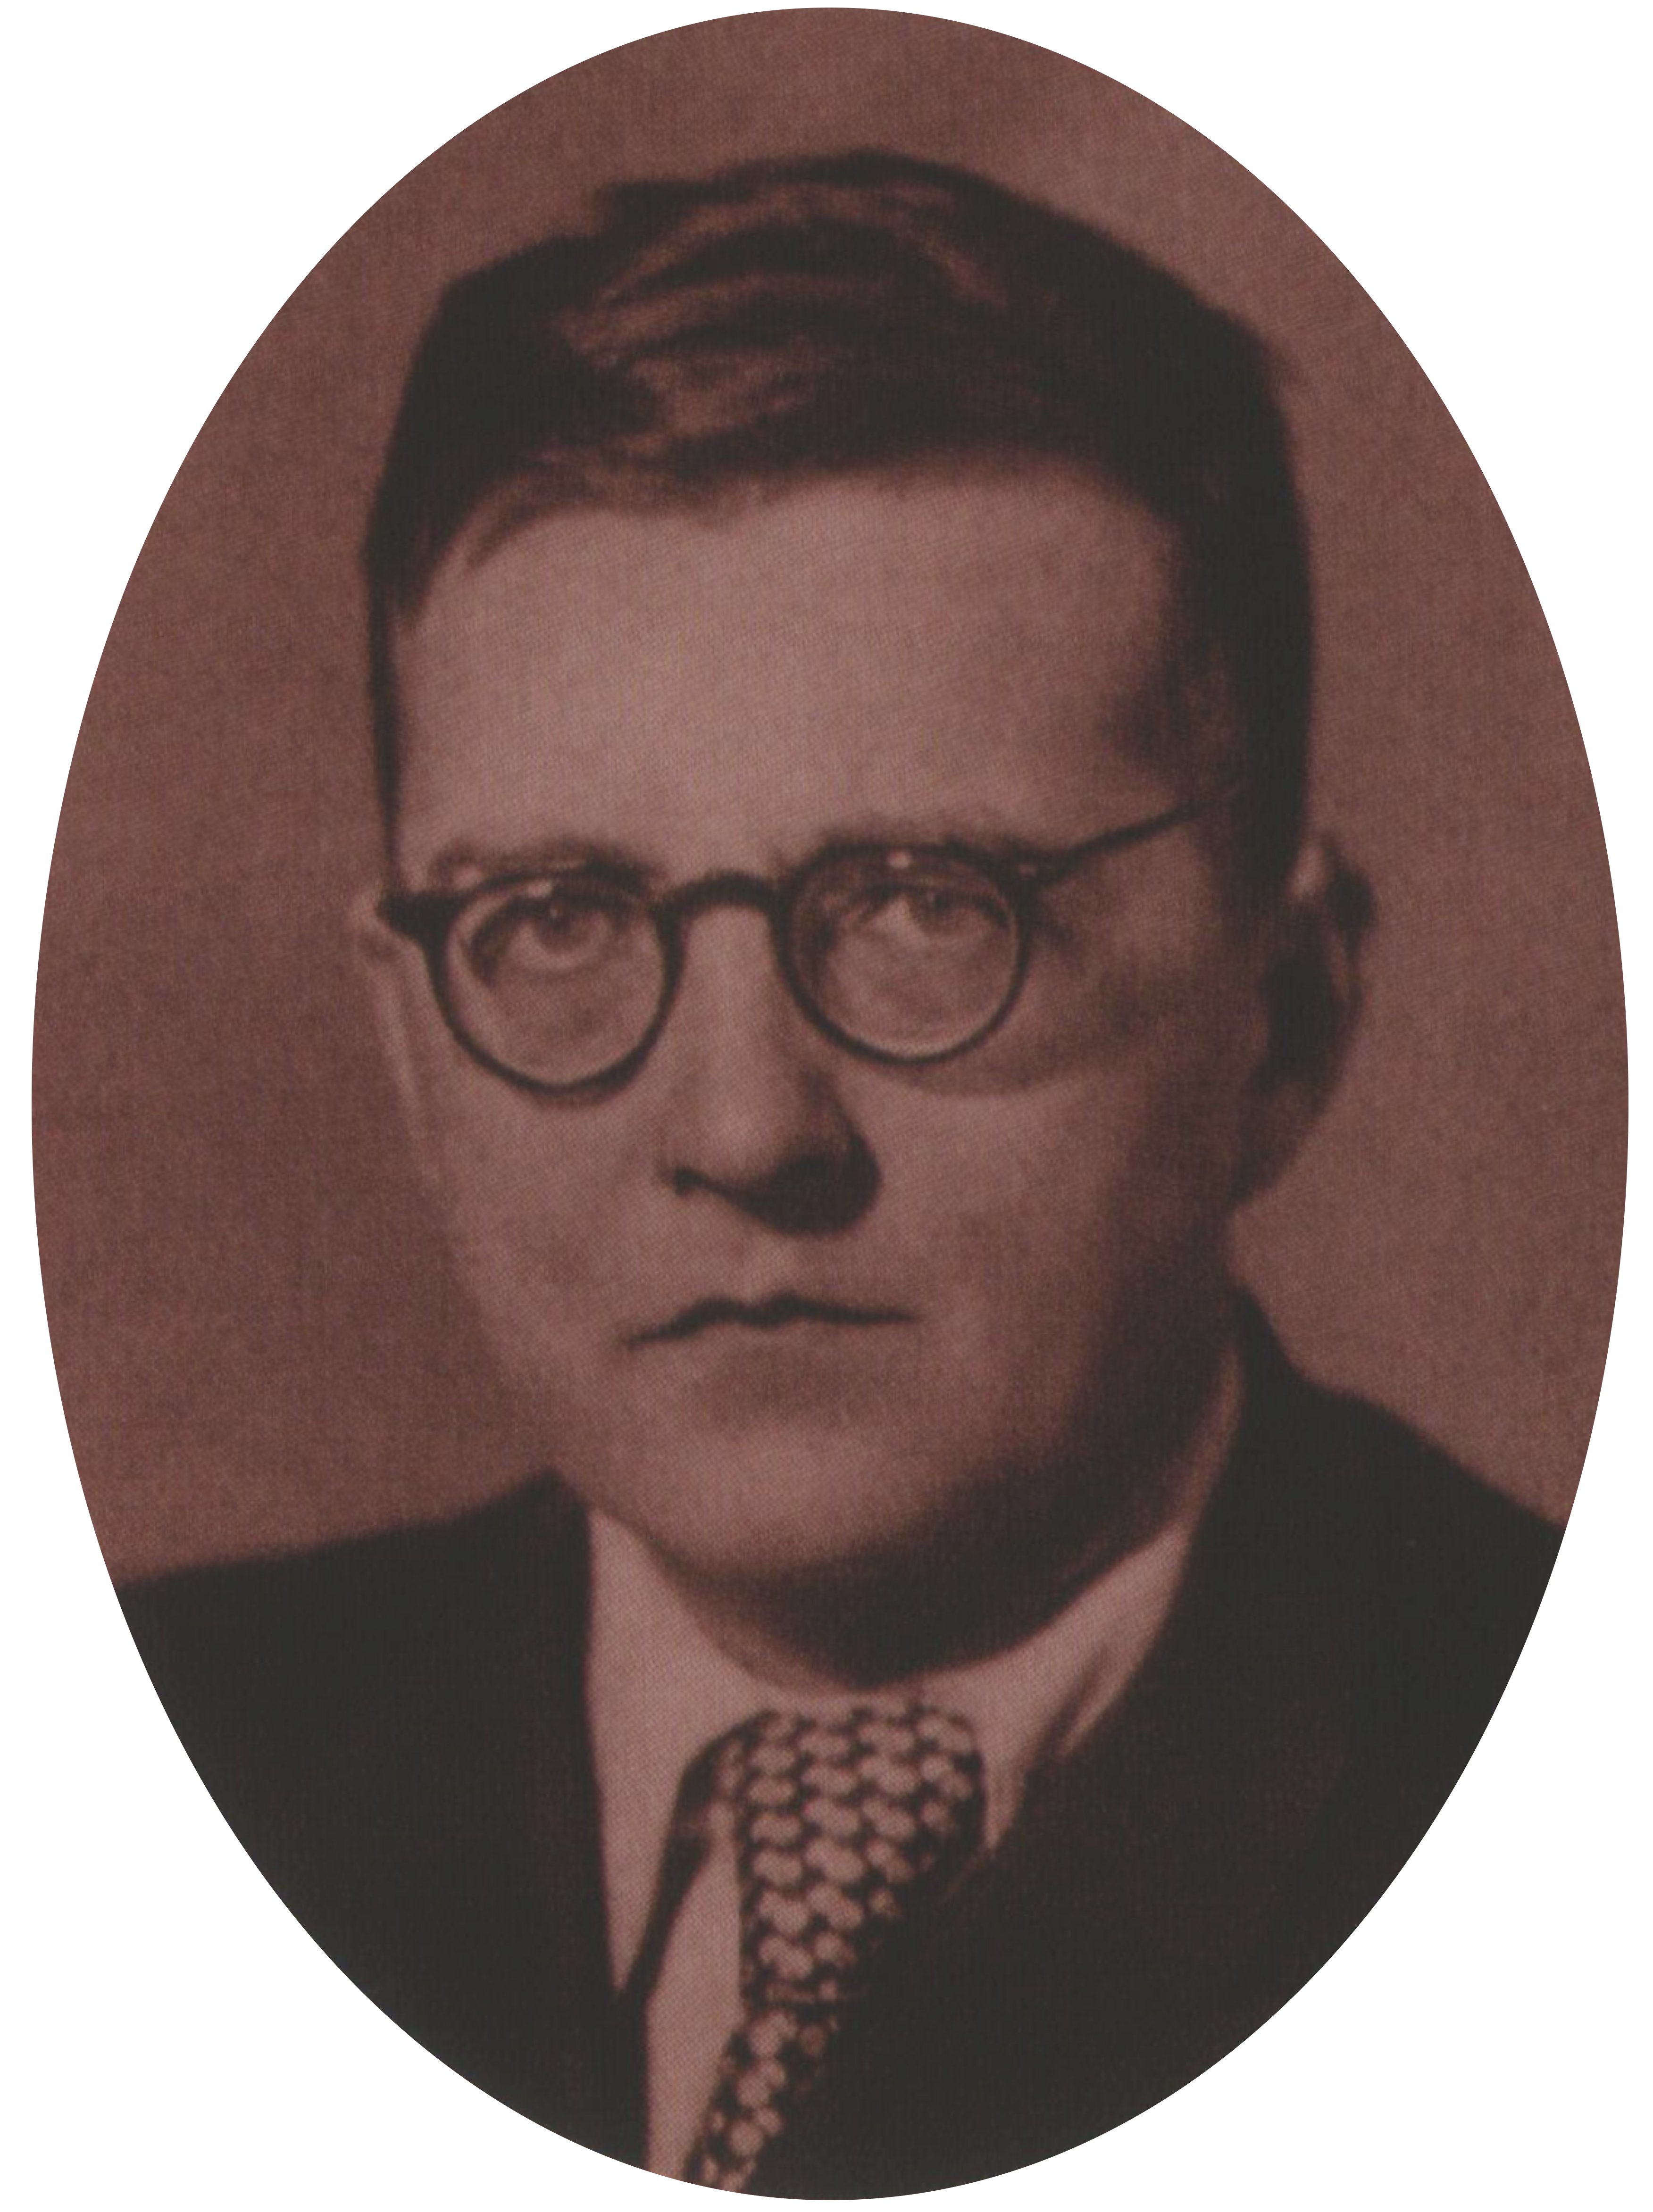 Д Д Шостакович